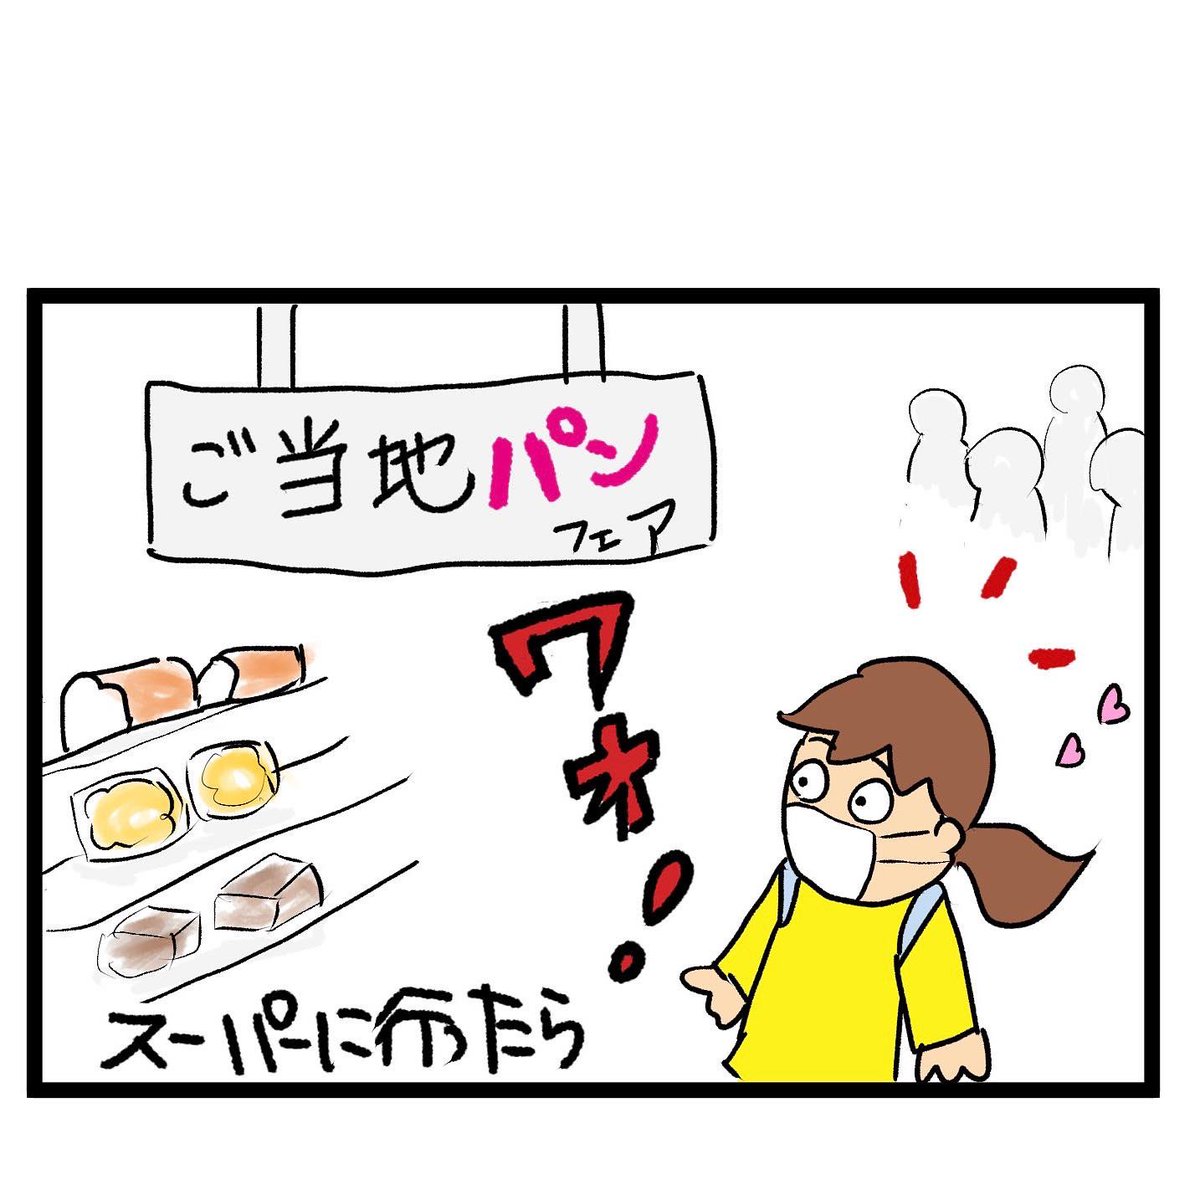 #四コマ漫画
#ご当地パン
牛乳パン 